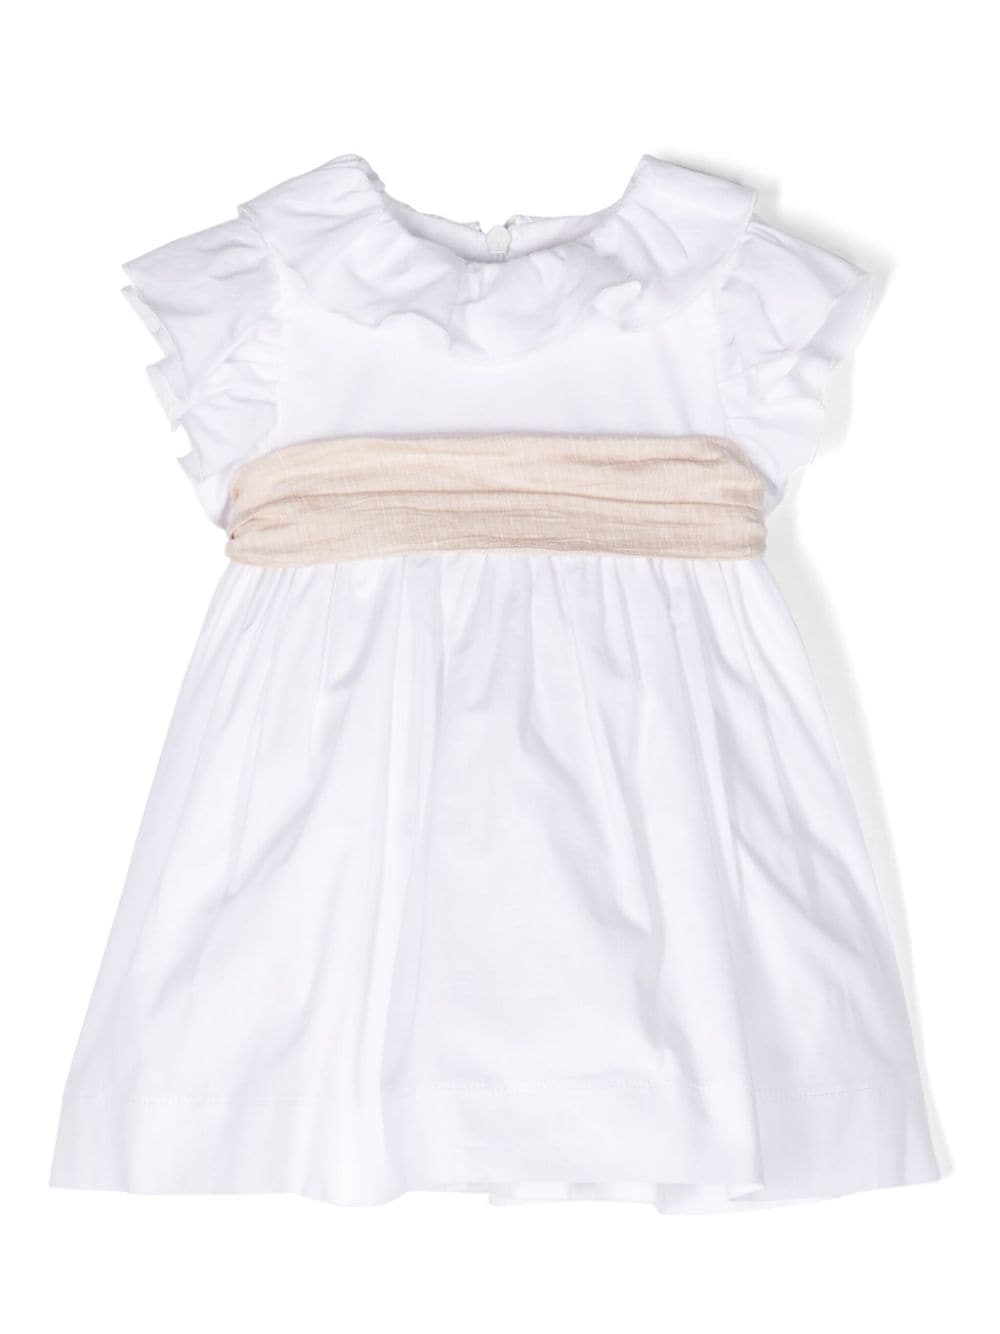 robe blanche nouveau né